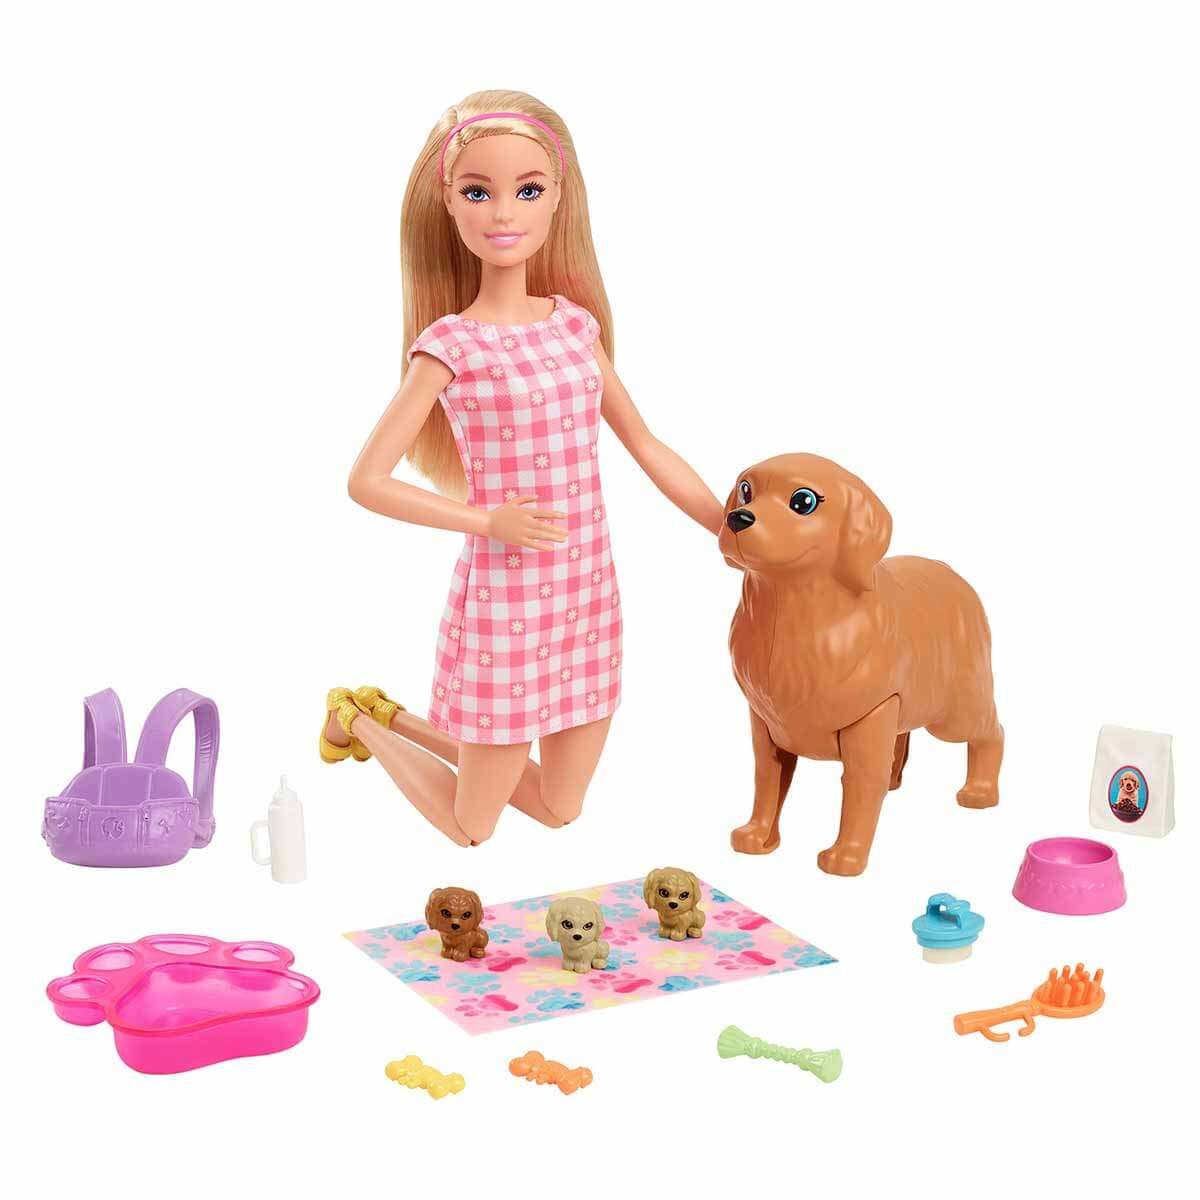 Barbie ve Hayvan Dostları